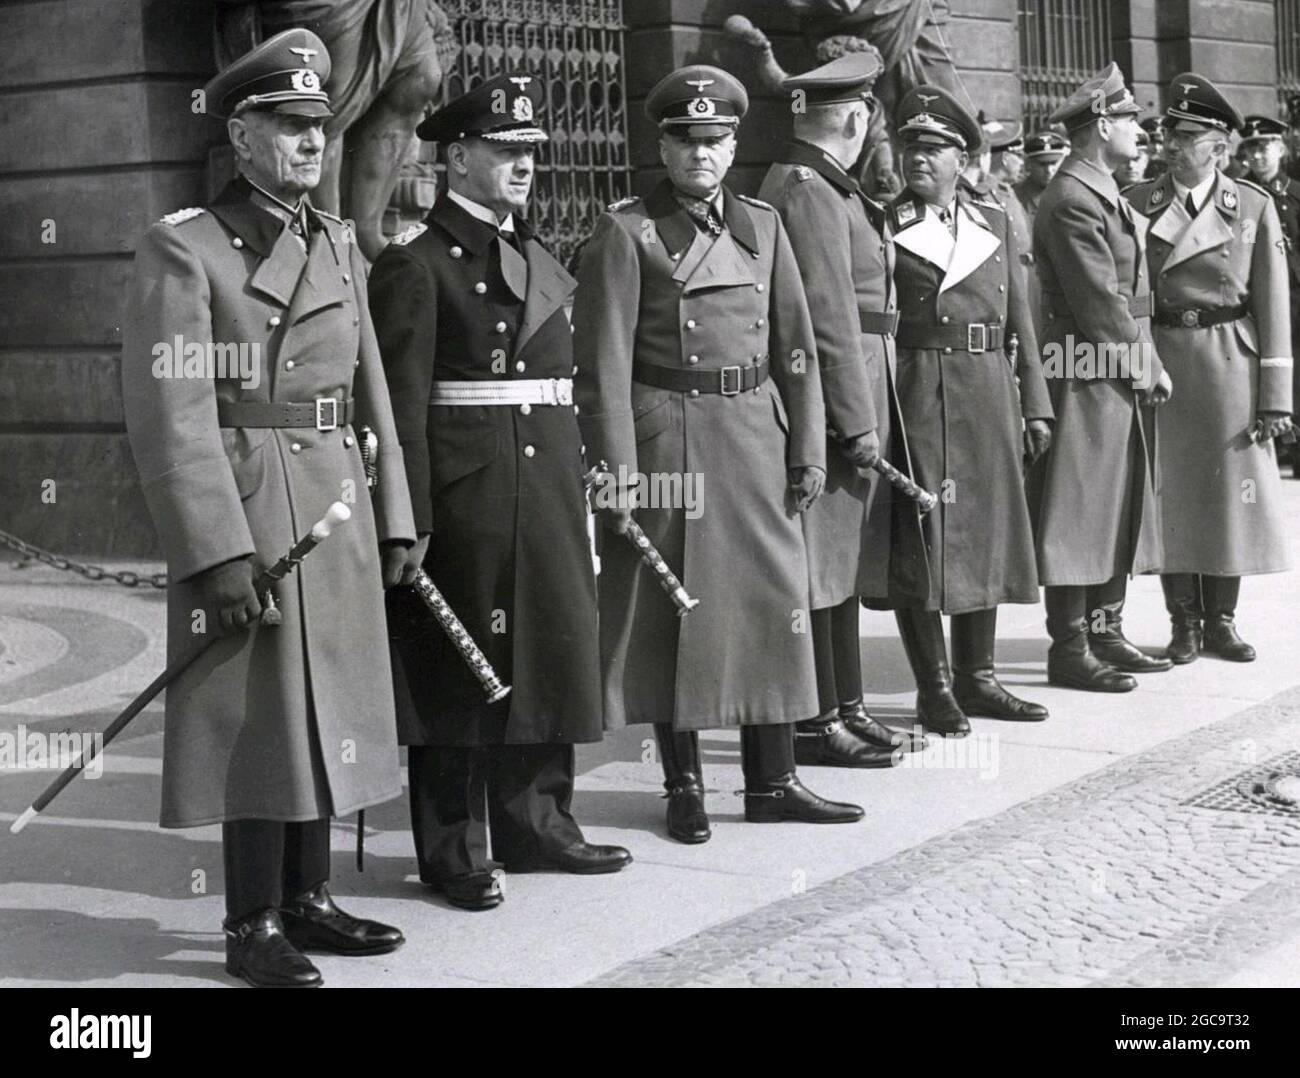 Eine Reihe von führenden nazi-Militärführern. Eduard von Böhm-Ermolli, Erich Raeder, Walther von Brauchitsch, Wilhelm Keitel, Erhard Milch, Rudolf Hess, Heinrich Himmler, Stockfoto